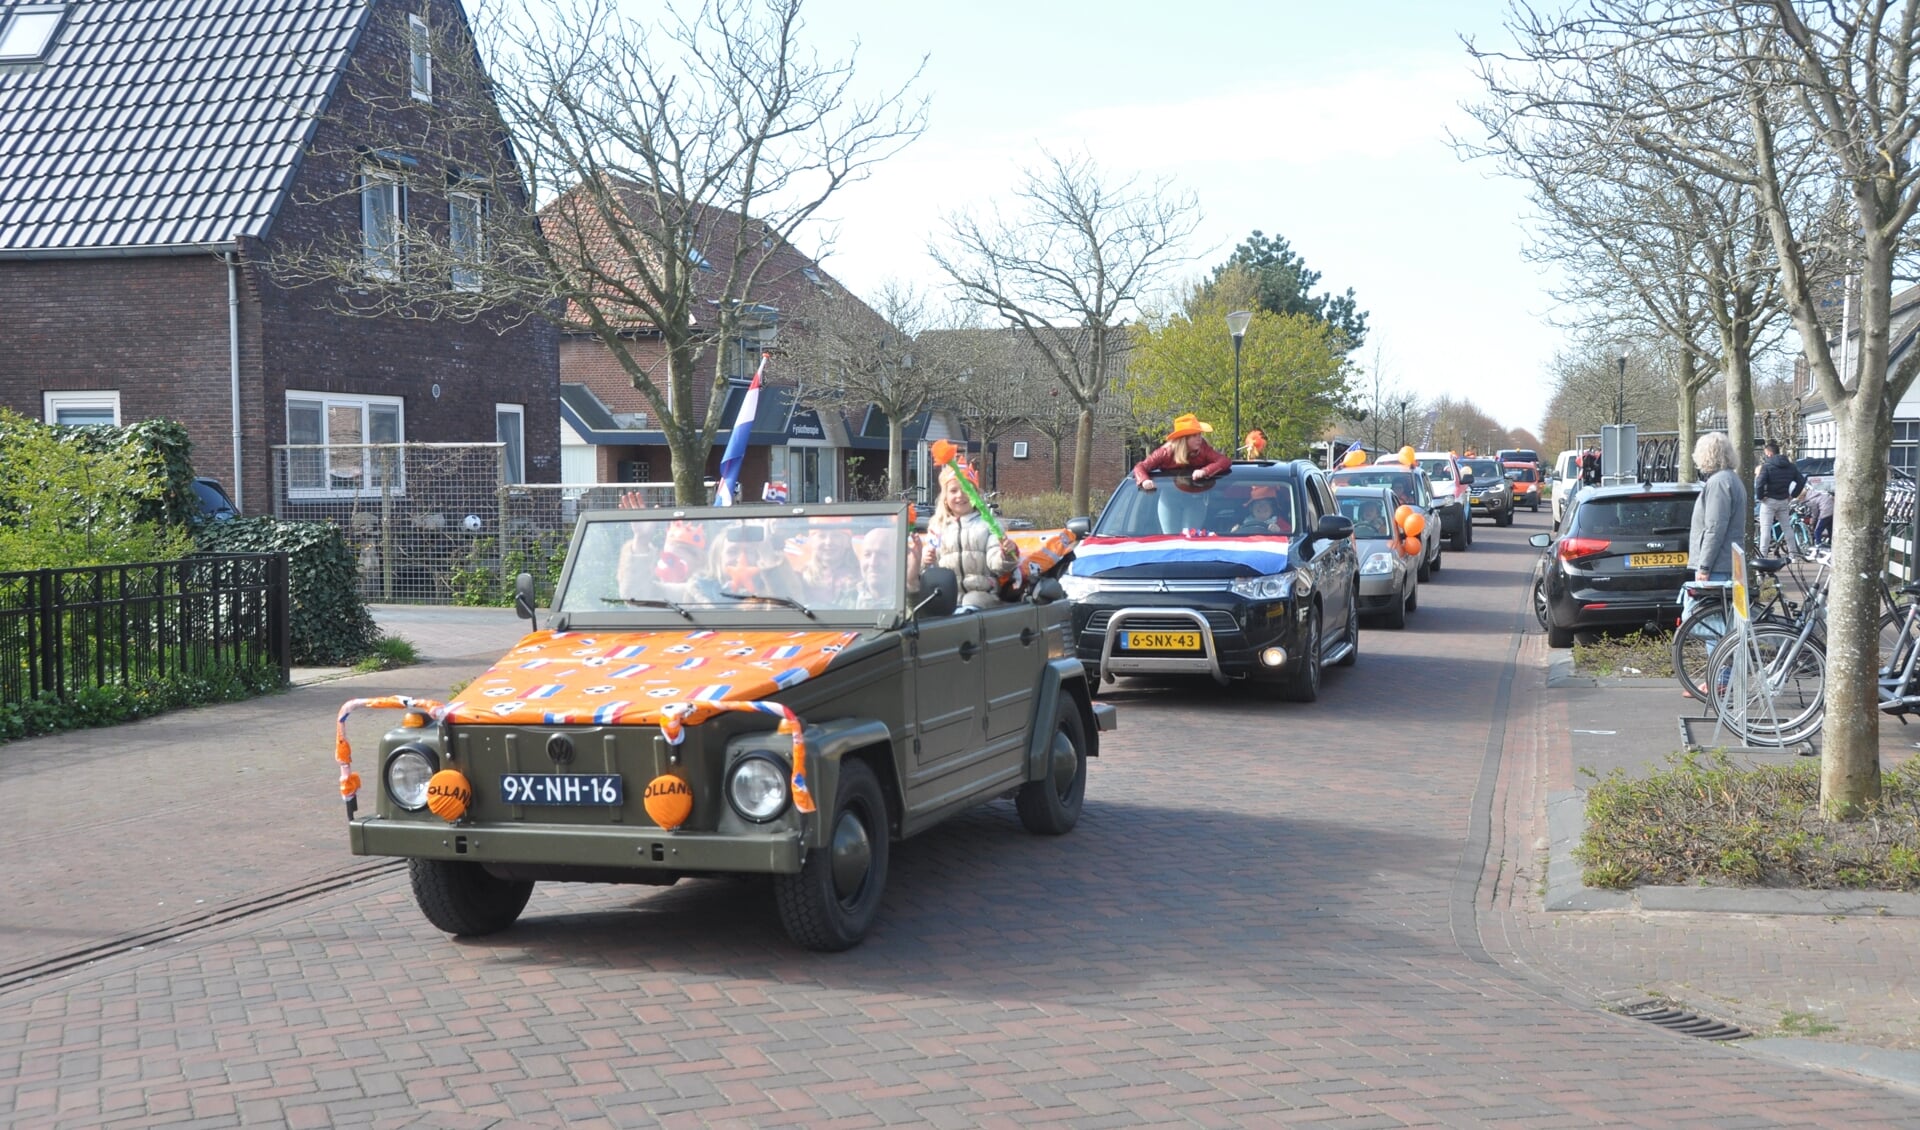 Optocht met auto's door De Cocksdorp, georganiseerd door de Feestcommissie van De Cocksdorp en Eierland.